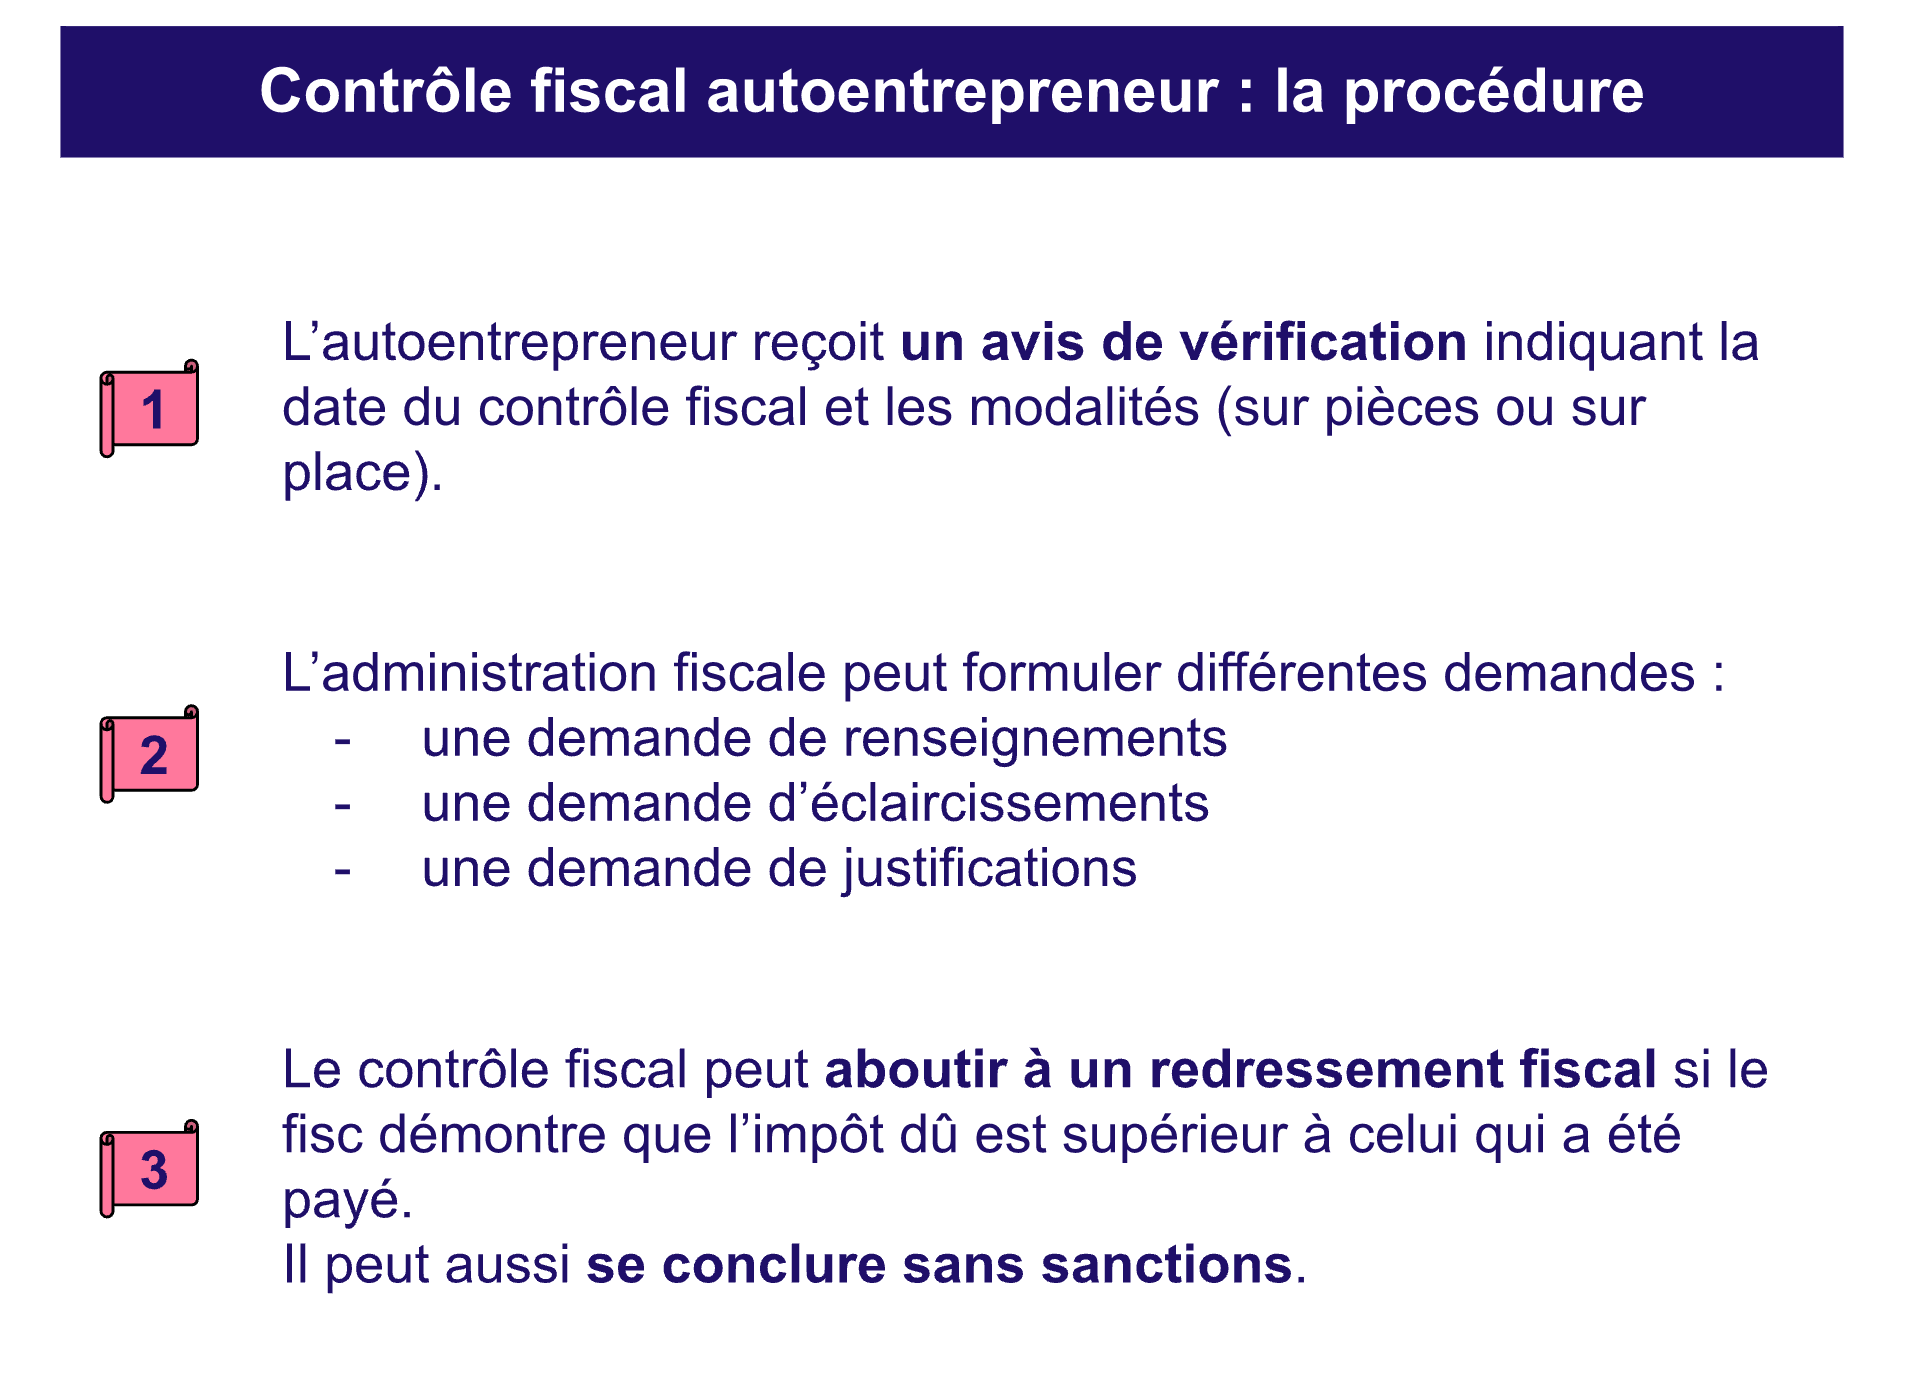 Procedure de contrôle fiscal autoentrepreneur